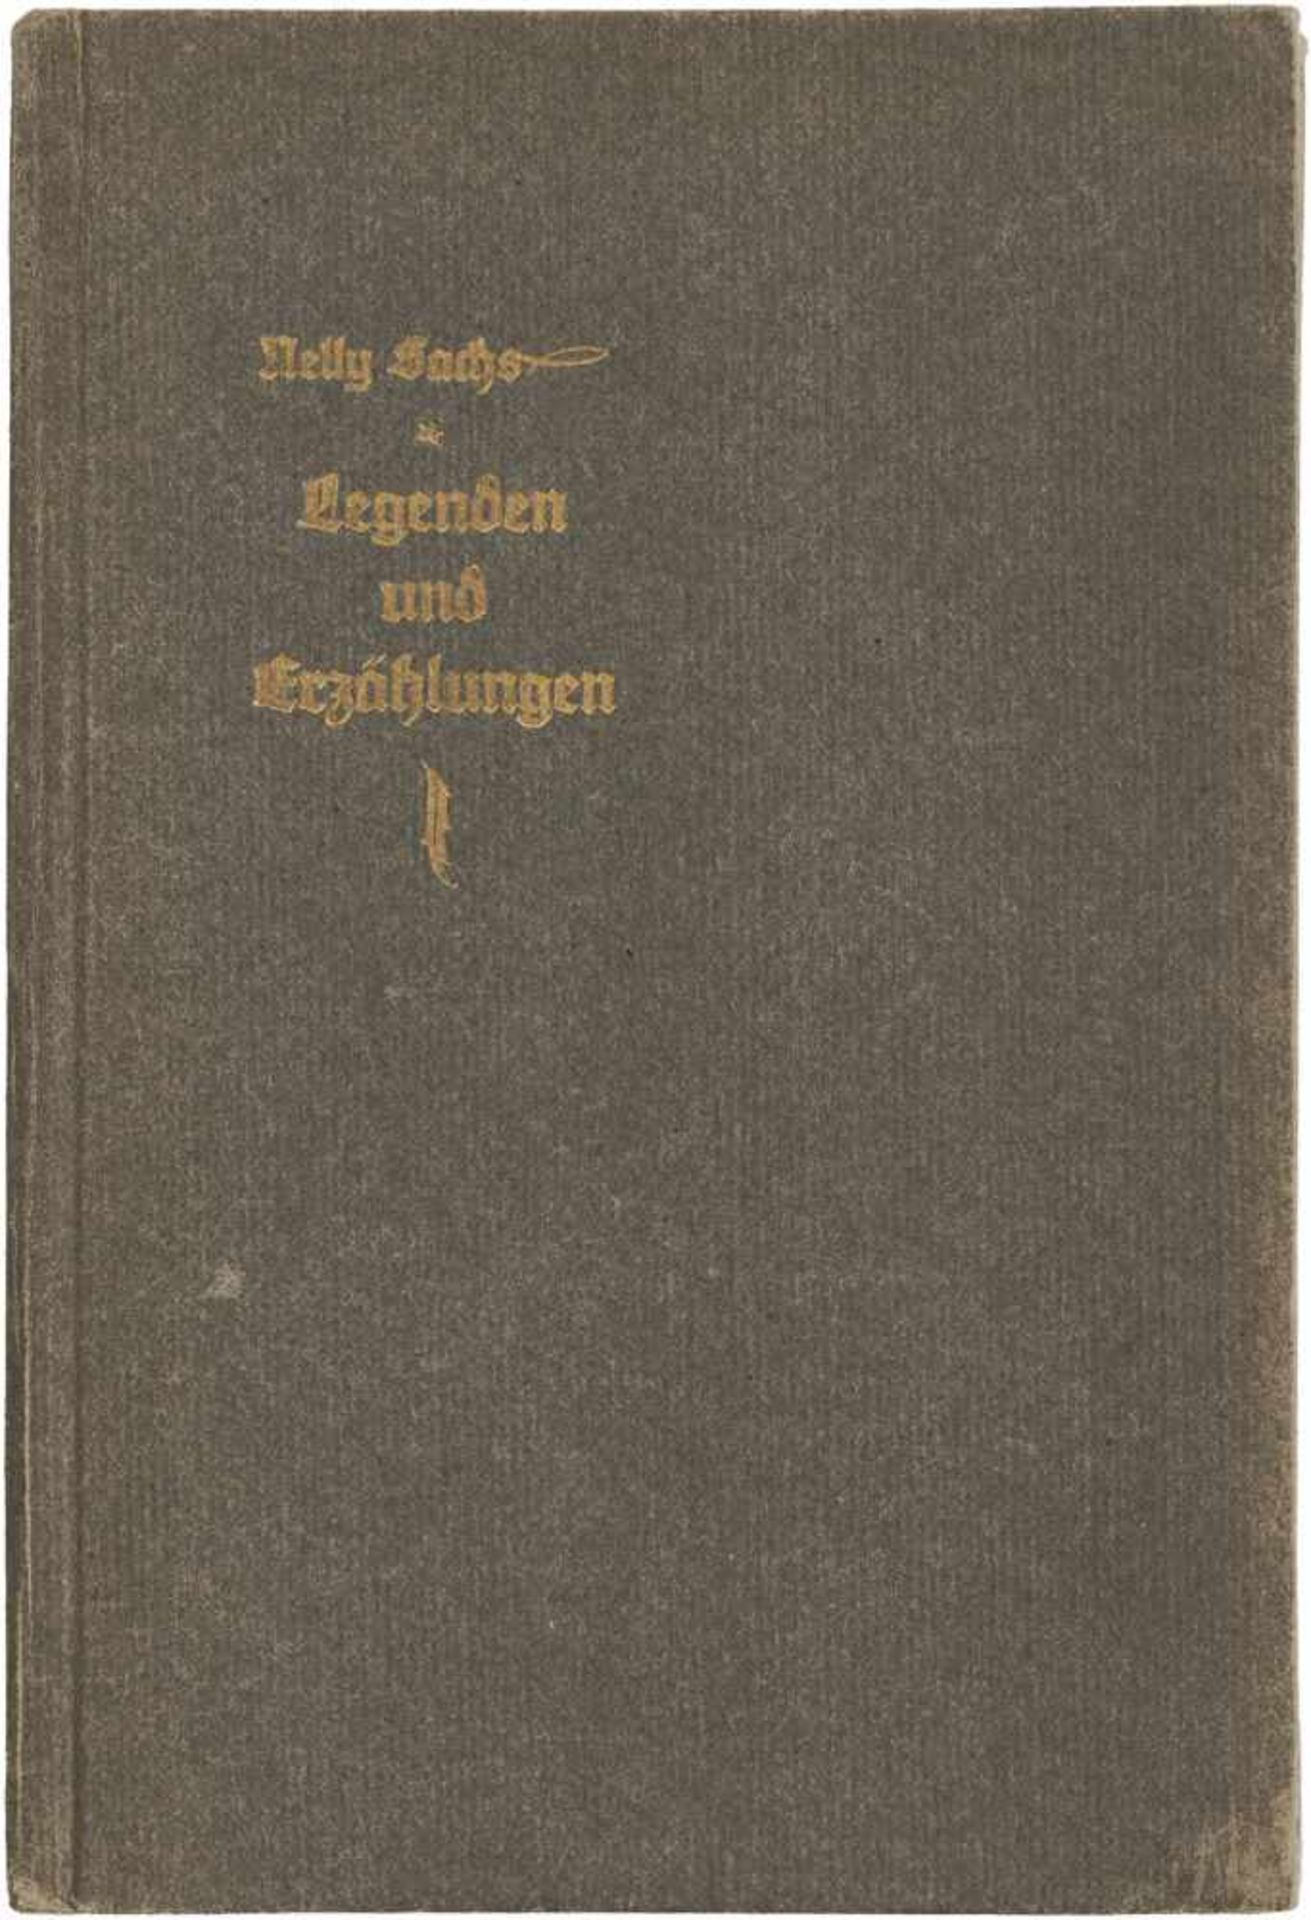 Sachs, Nelly: Legenden und ErzählungenSachs, Nelly. Legenden und Erzählungen. 124 S., 2 Bl. 18,5 x